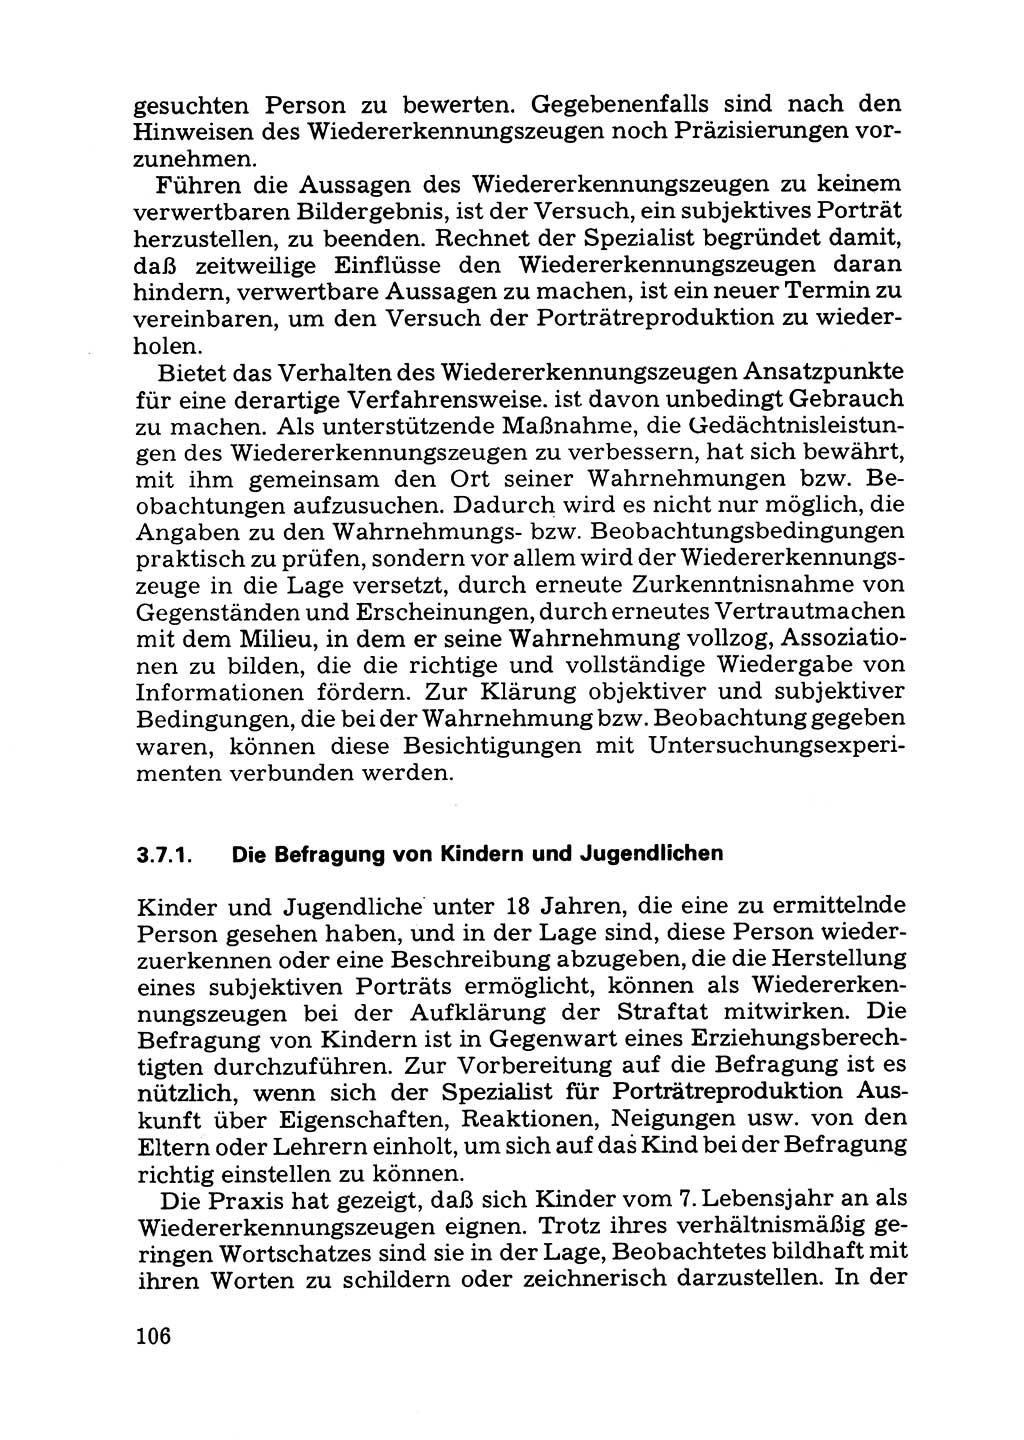 Das subjektive Porträt [Deutsche Demokratische Republik (DDR)] 1981, Seite 106 (Subj. Port. DDR 1981, S. 106)